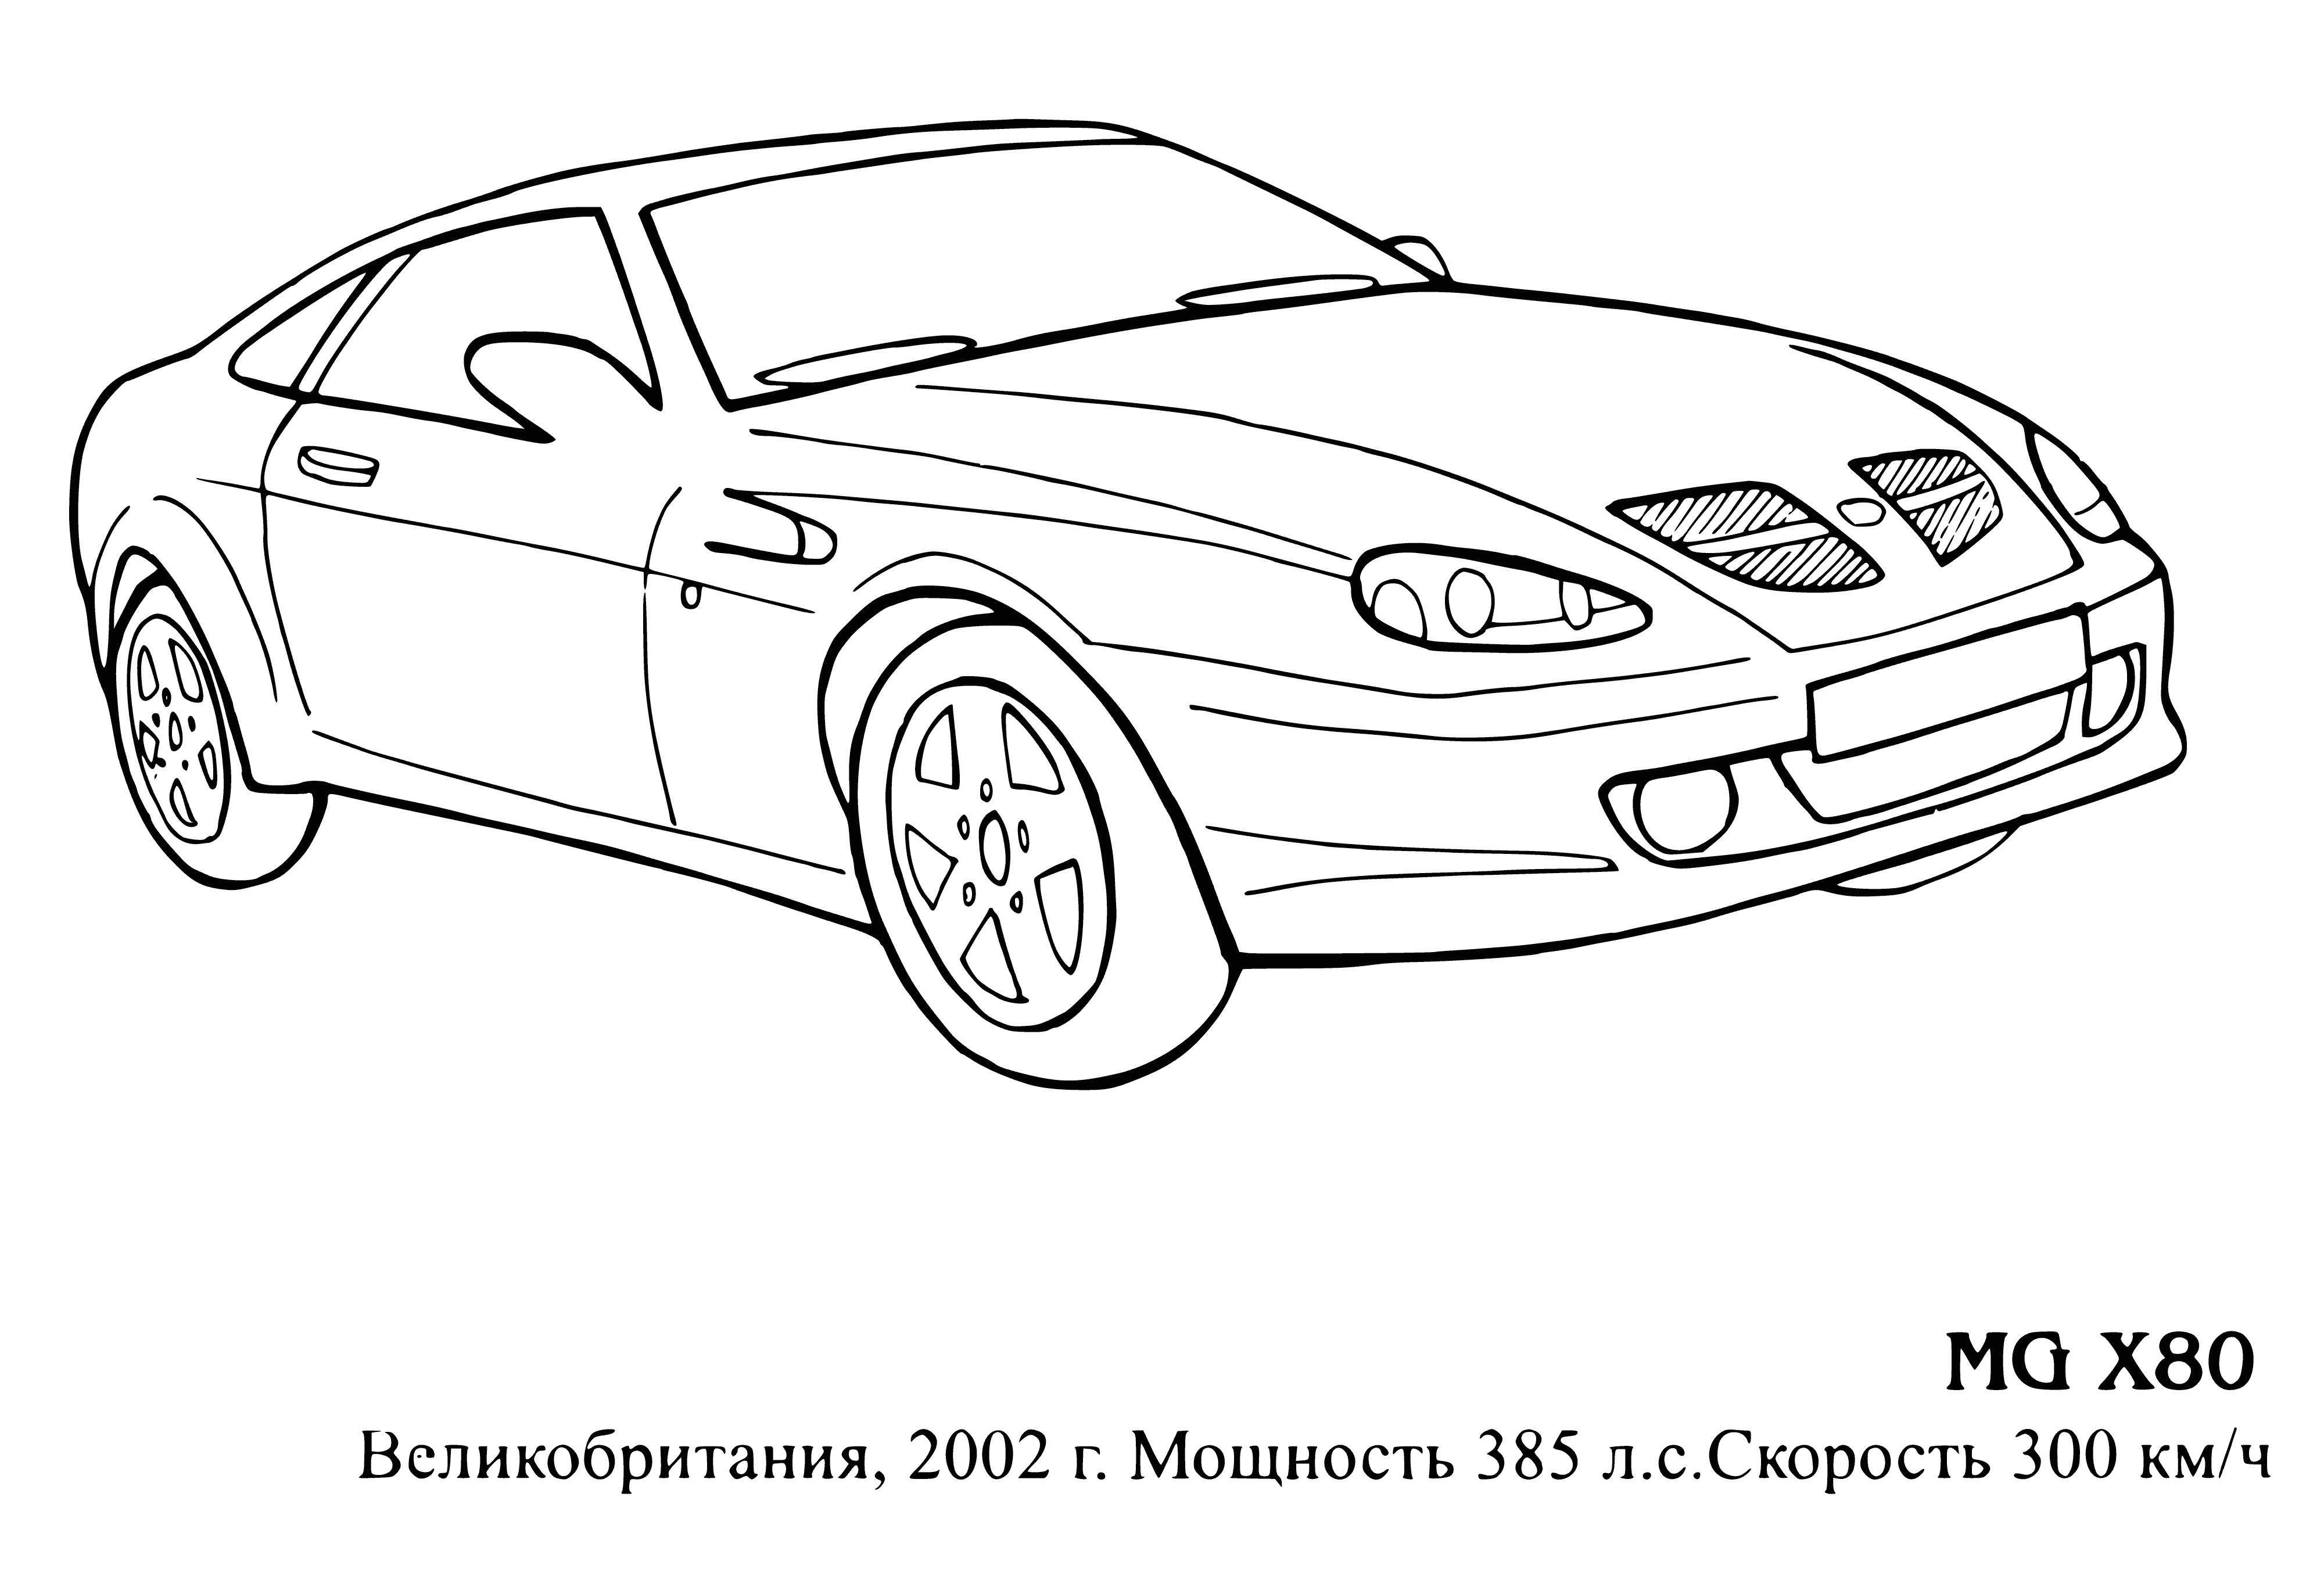 MG X80 boyama sayfası